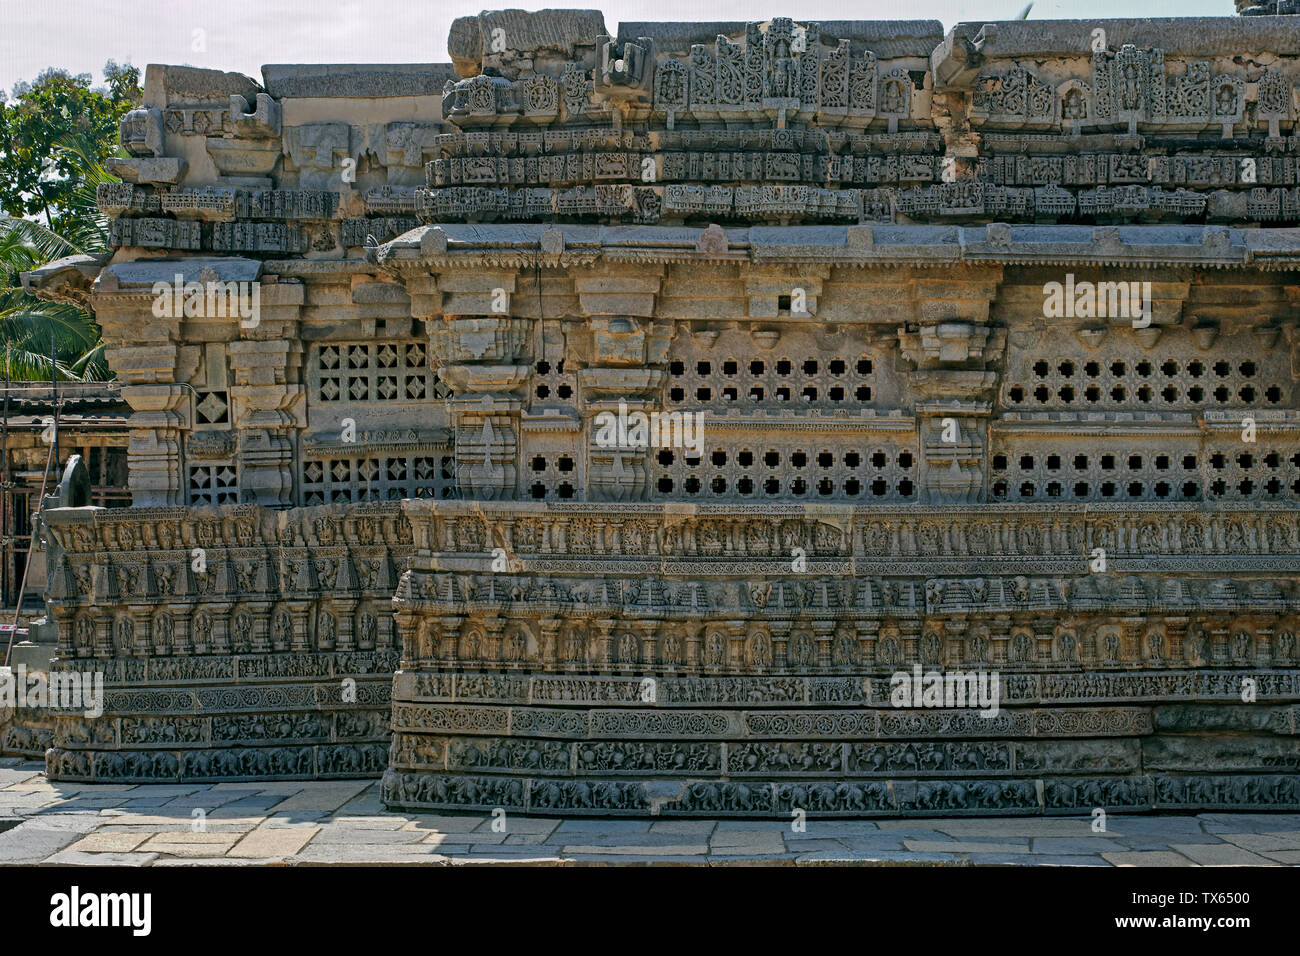 31 Okt 2009 Stein gemeißelt-1268 AD Hoysala Tempel am Architecture-Kesava Somnathpur Dorf 45 km von Mysore Karnataka, Indien Stockfoto